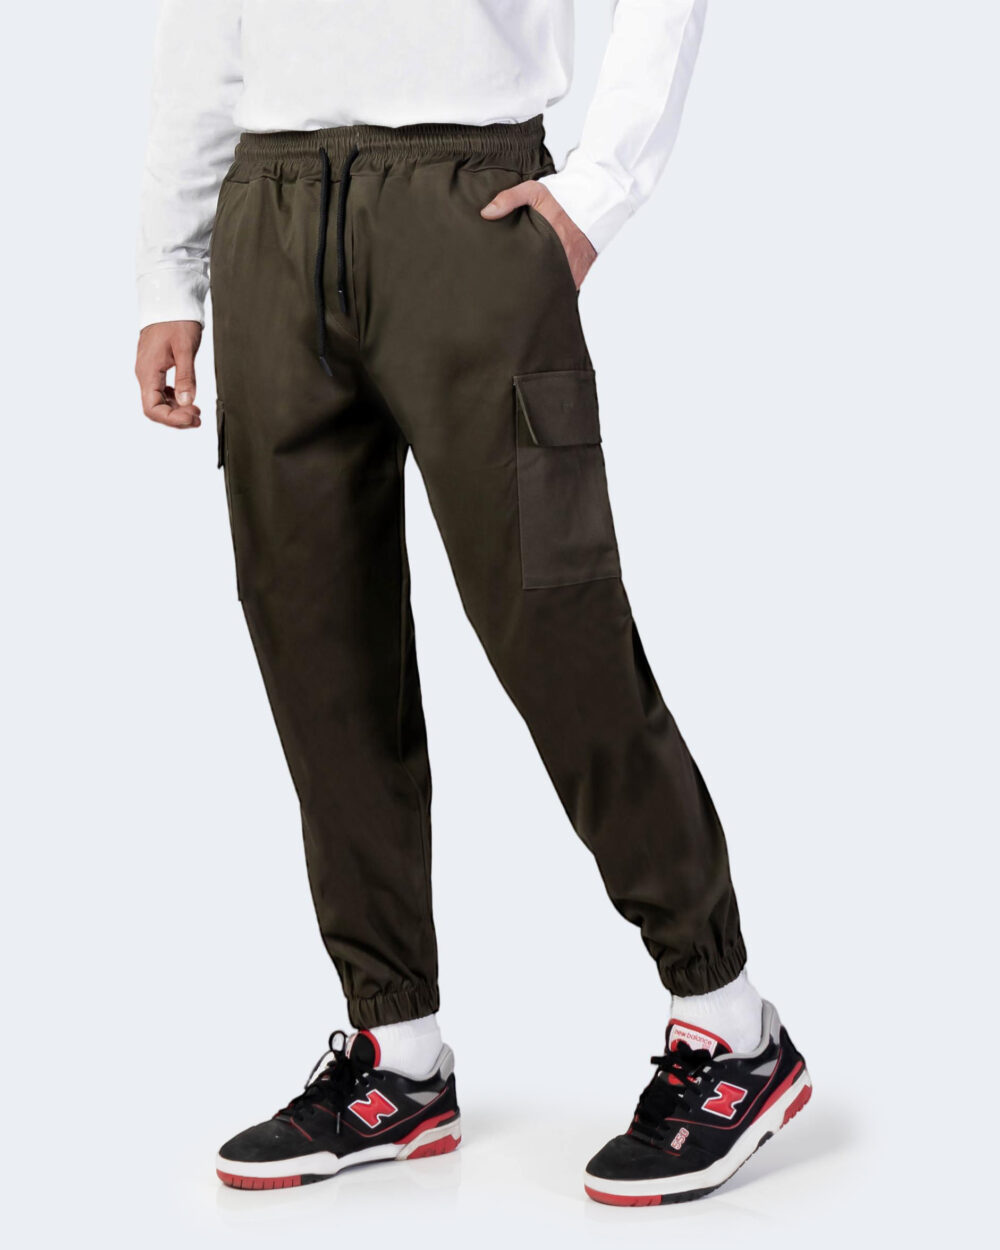 Pantaloni con cavallo basso Hydra Clothing CARGO Verde Oliva - Foto 1